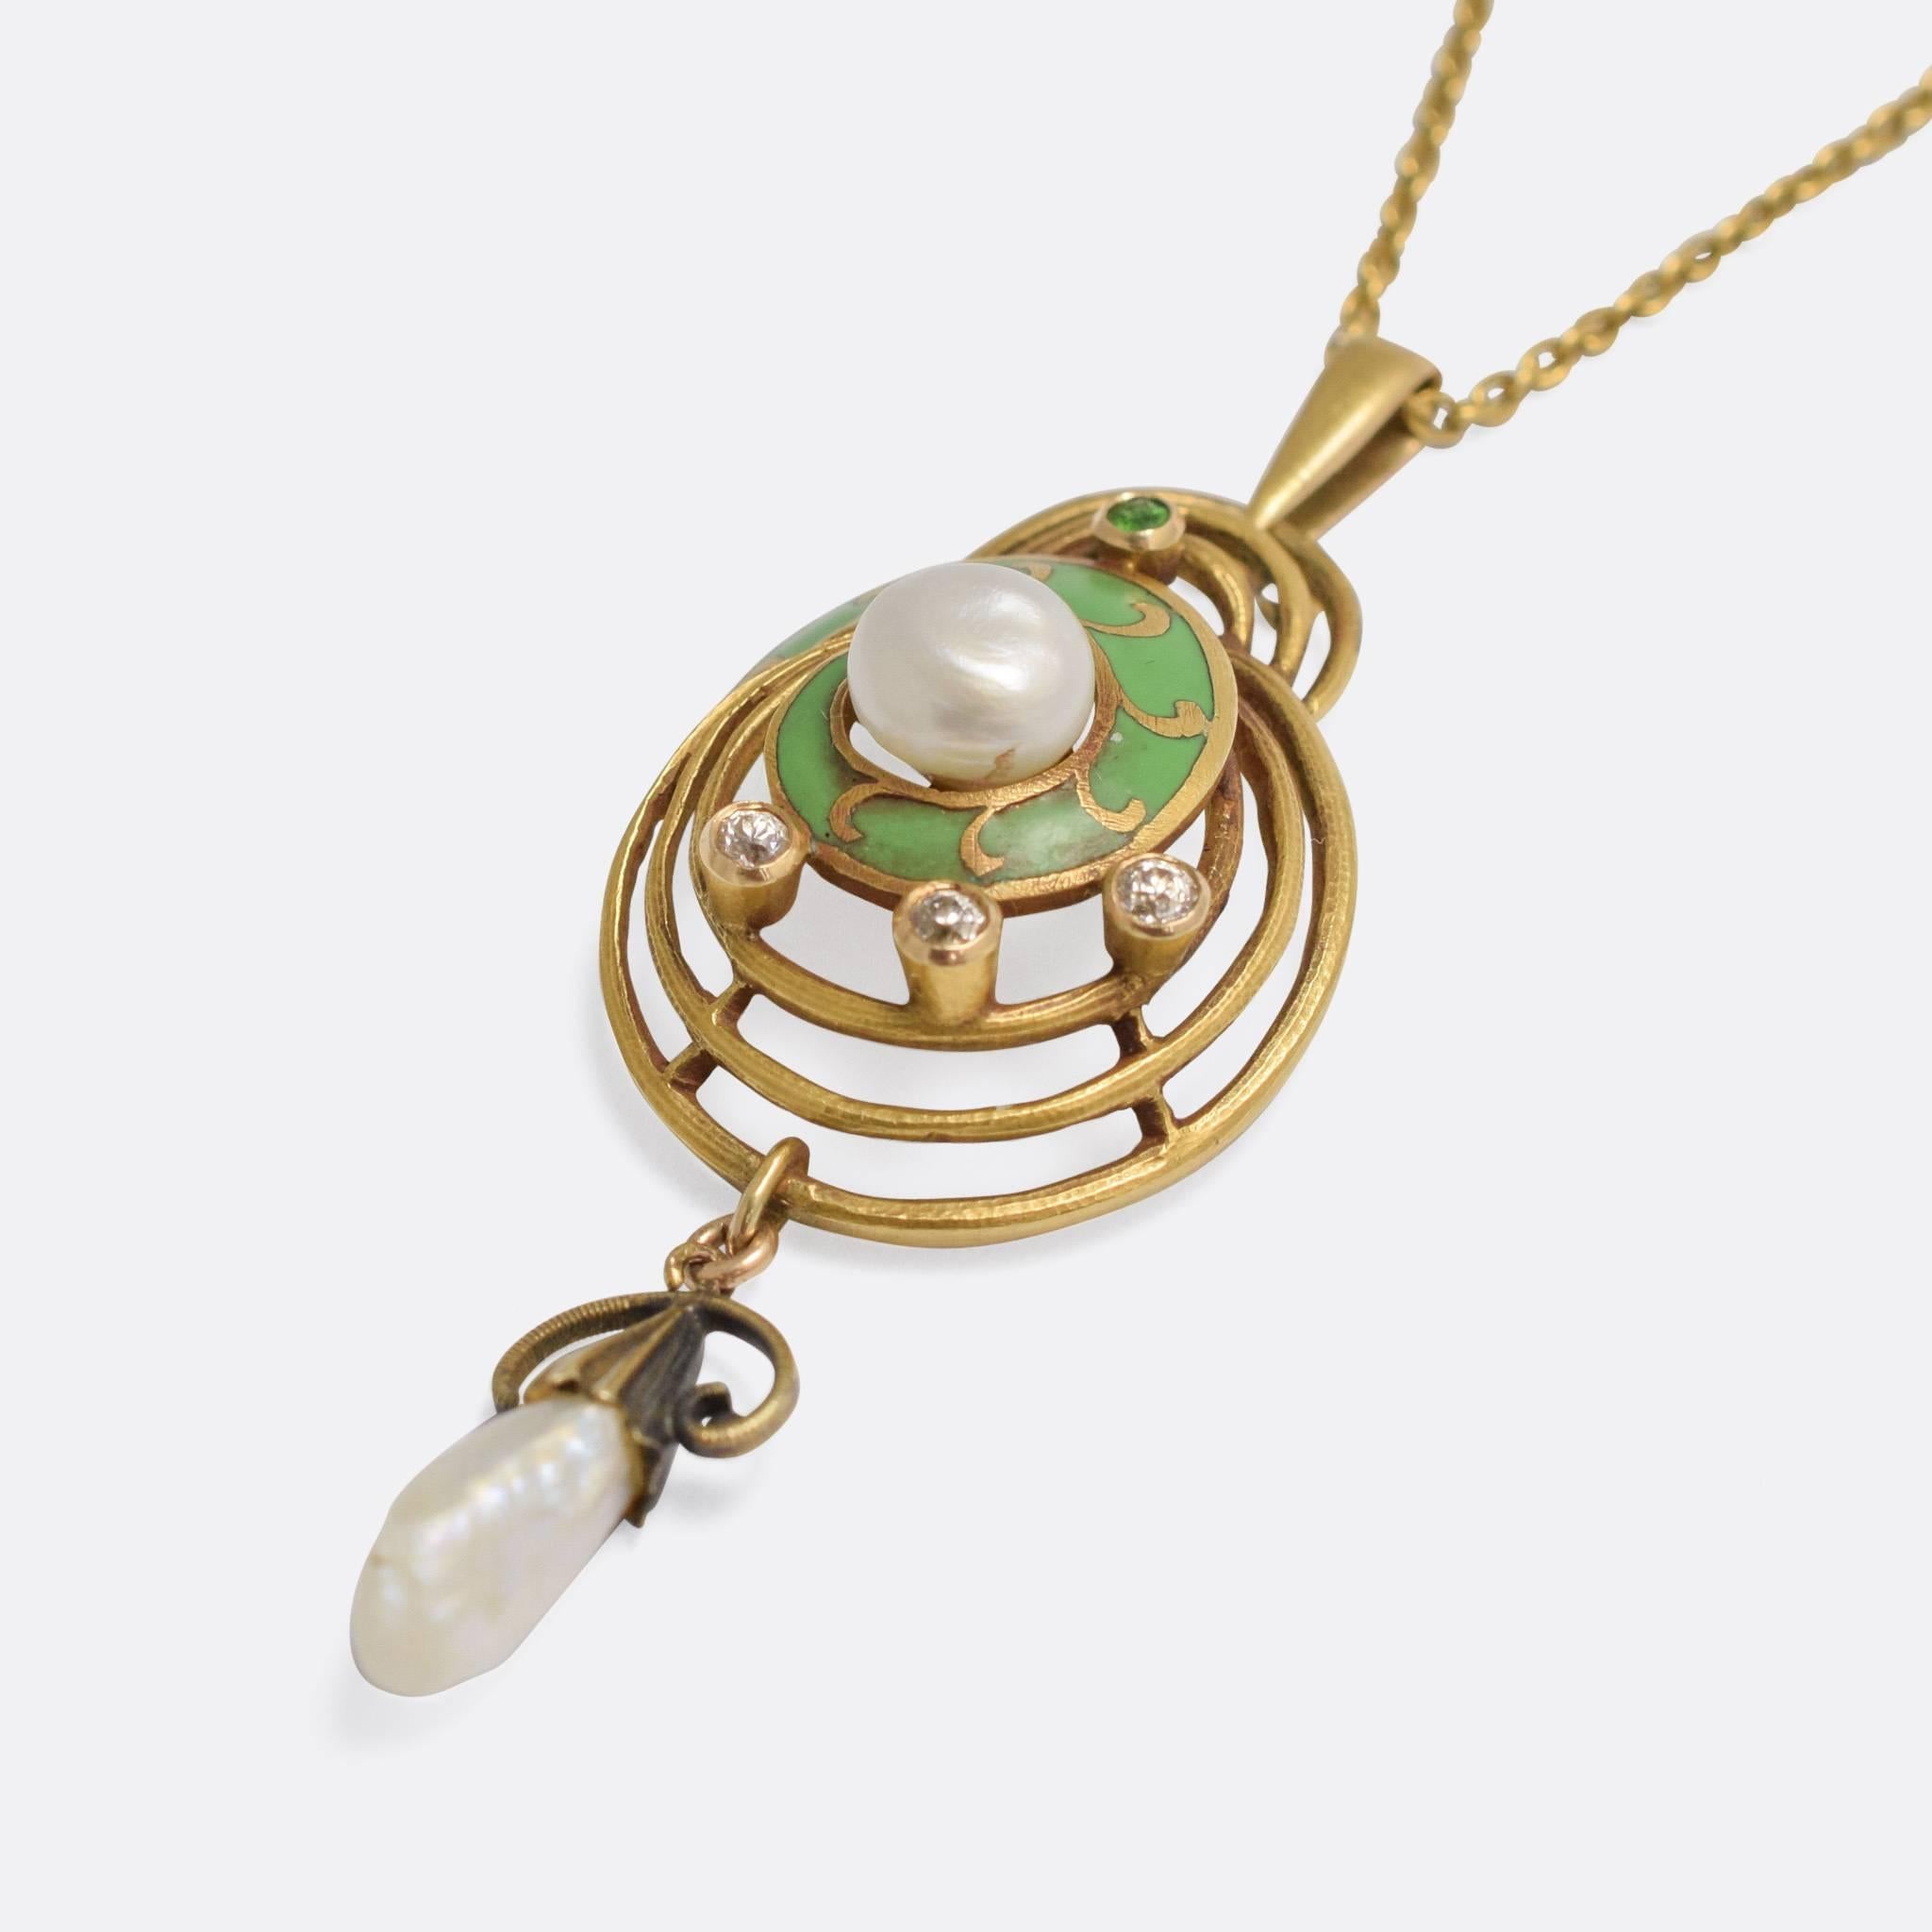 A superb Art Nouveau necklace, comprising a 17.5